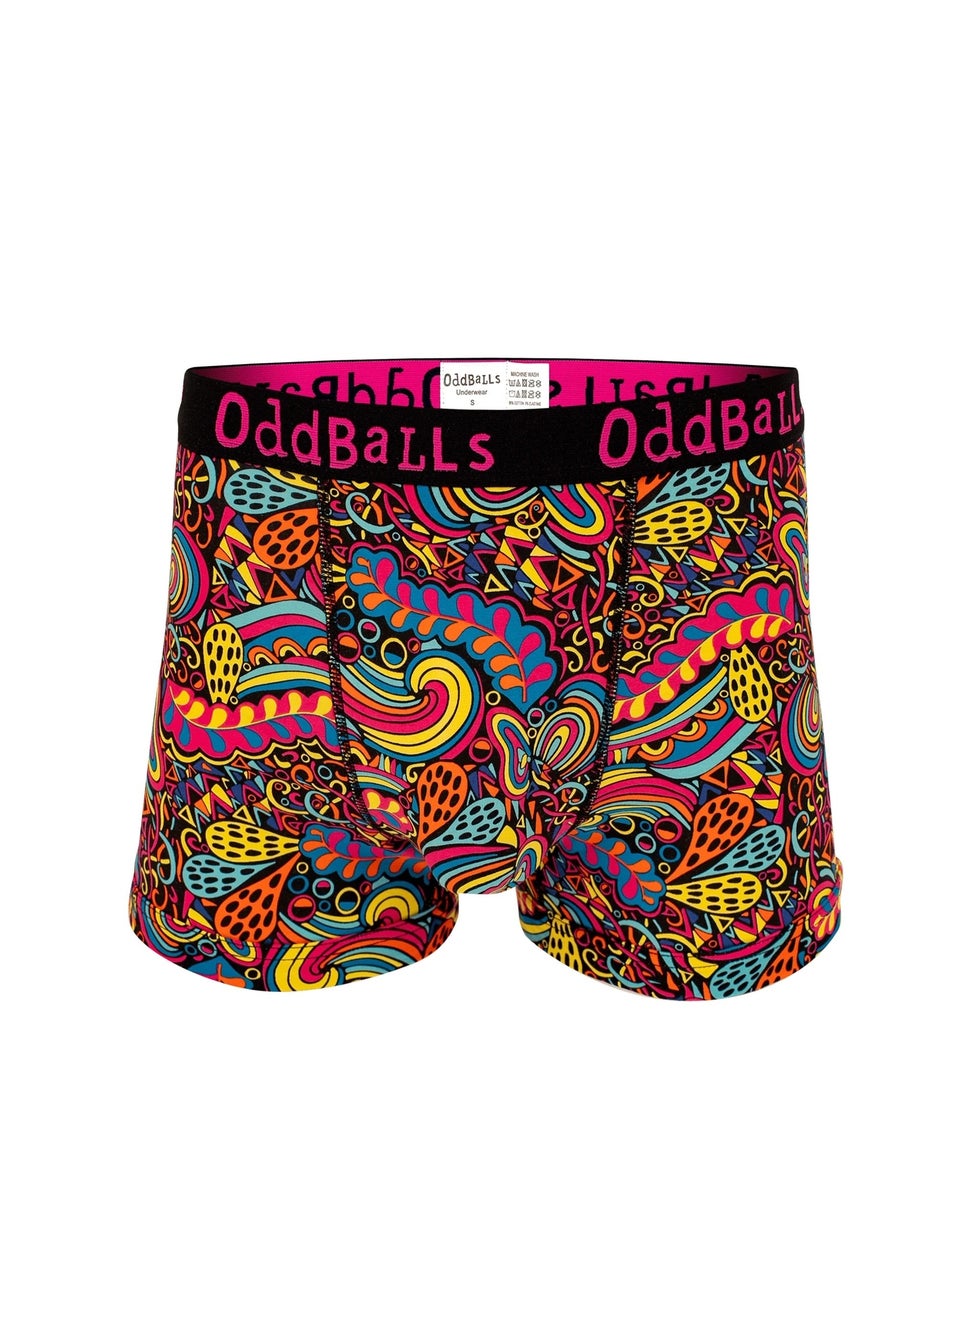 OddBalls Multi Enchanted Boxer Shorts